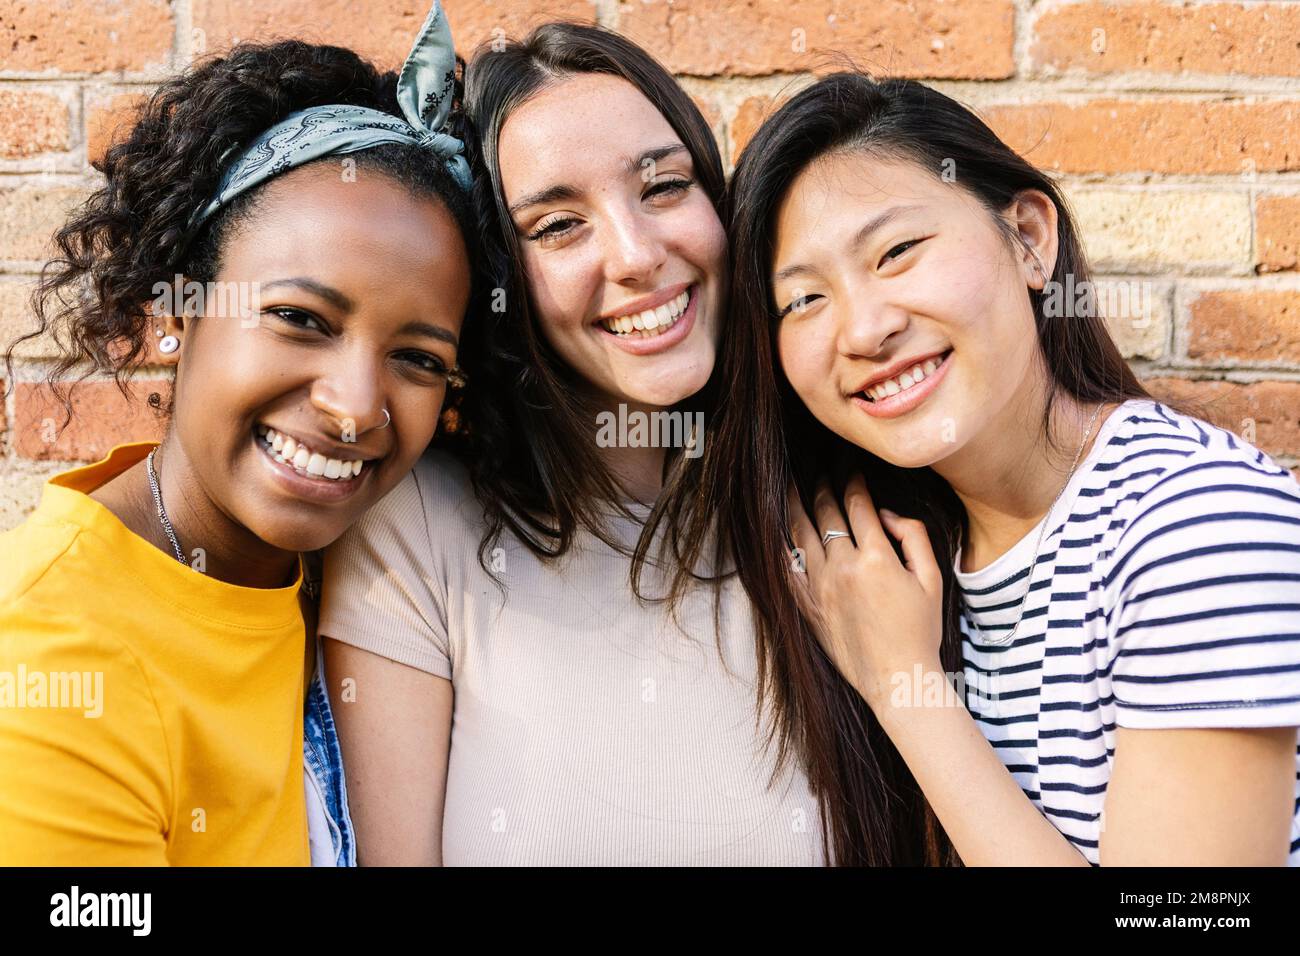 Ritratto sorridente di tre giovani amici donne diverse che guardano la fotocamera all'aperto Foto Stock